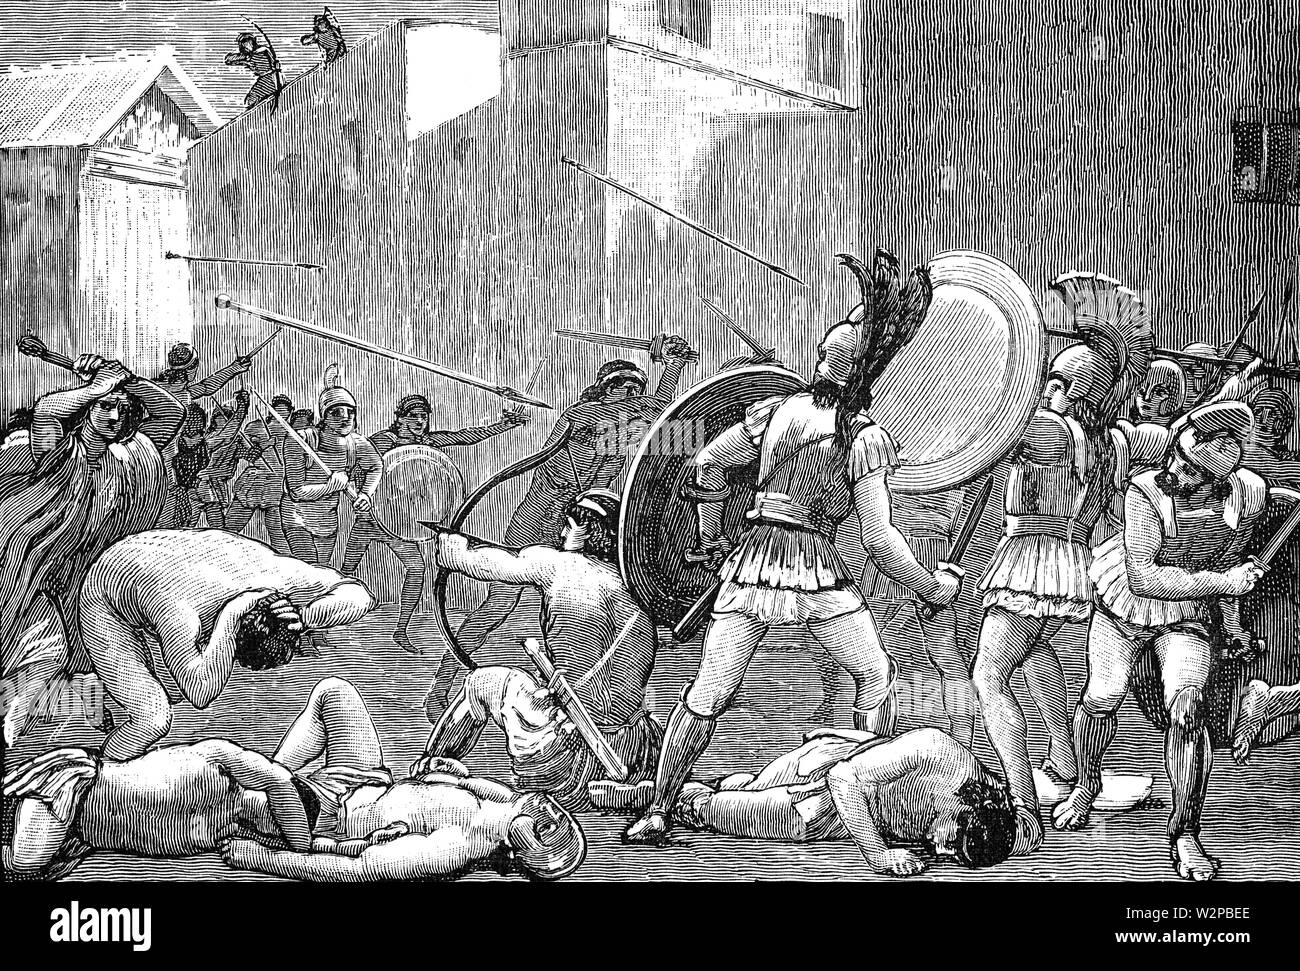 Le siège de Sparte qui a eu lieu en 272 BC et entre l'Épire, menée par le roi Pyrrhus, (297-272 av. J.-C.) et une alliance composée de Sparte, sous le commandement du roi Areus I (r. 309-265 av. J.-C.) et son héritier, Acrotatus et Medon. La bataille fut livrée à Sparte et terminé dans un Spartan-Macedonian la victoire. Banque D'Images